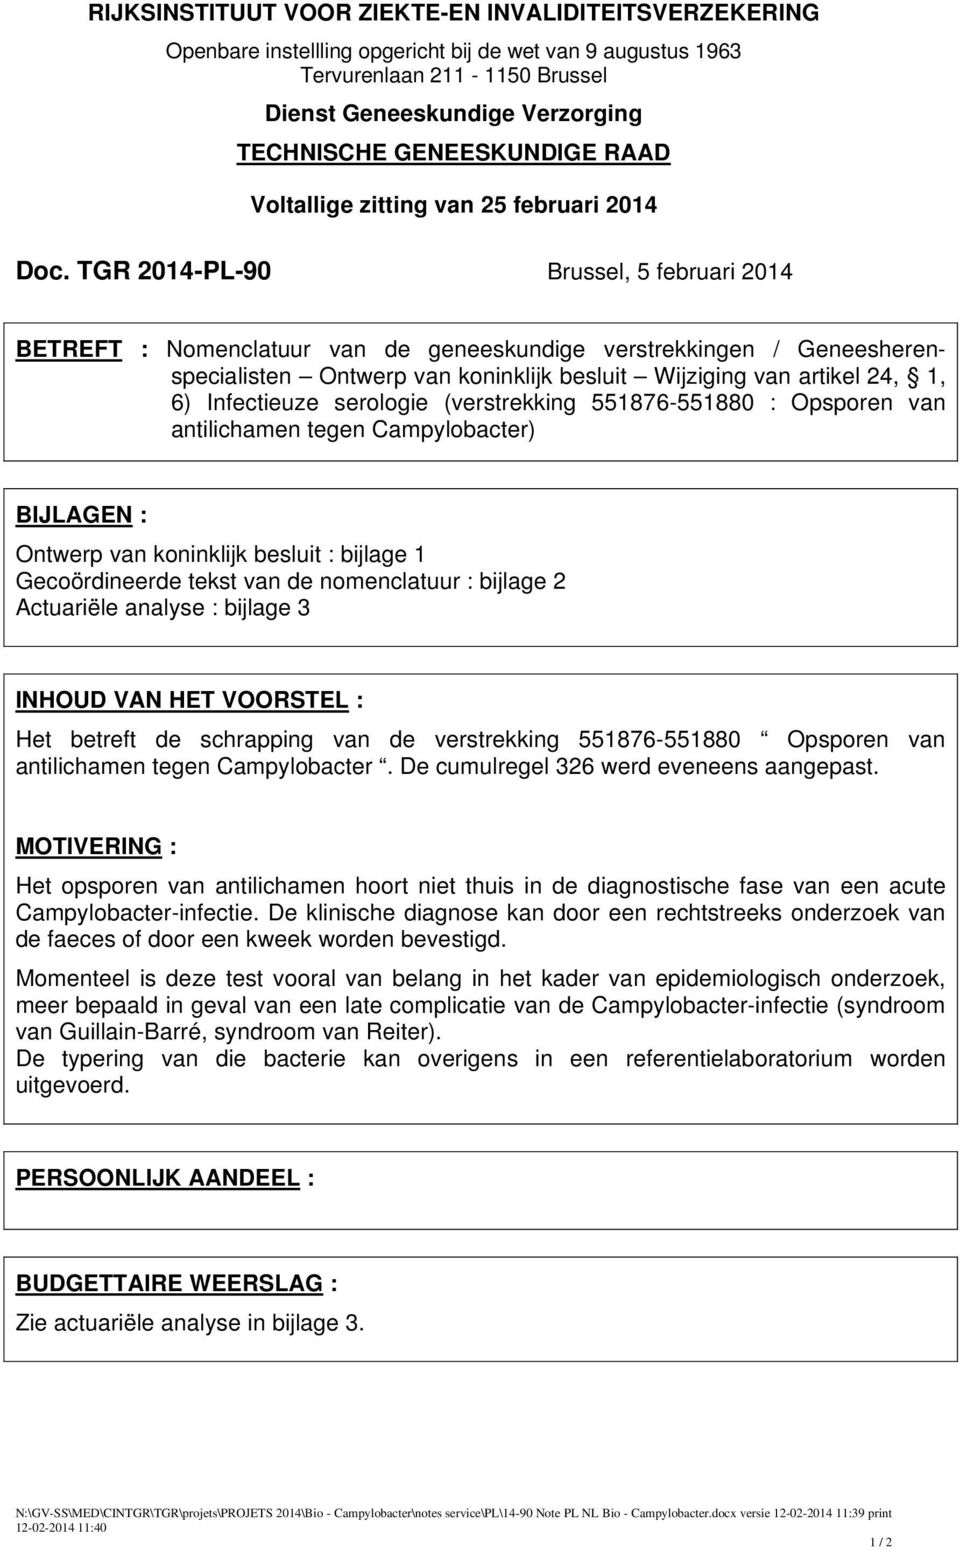 TGR 2014-PL-90 Brussel, 5 februari 2014 BETREFT : Nomenclatuur van de geneeskundige verstrekkingen / Geneesherenspecialisten Ontwerp van koninklijk besluit Wijziging van artikel 24, 1, 6) Infectieuze